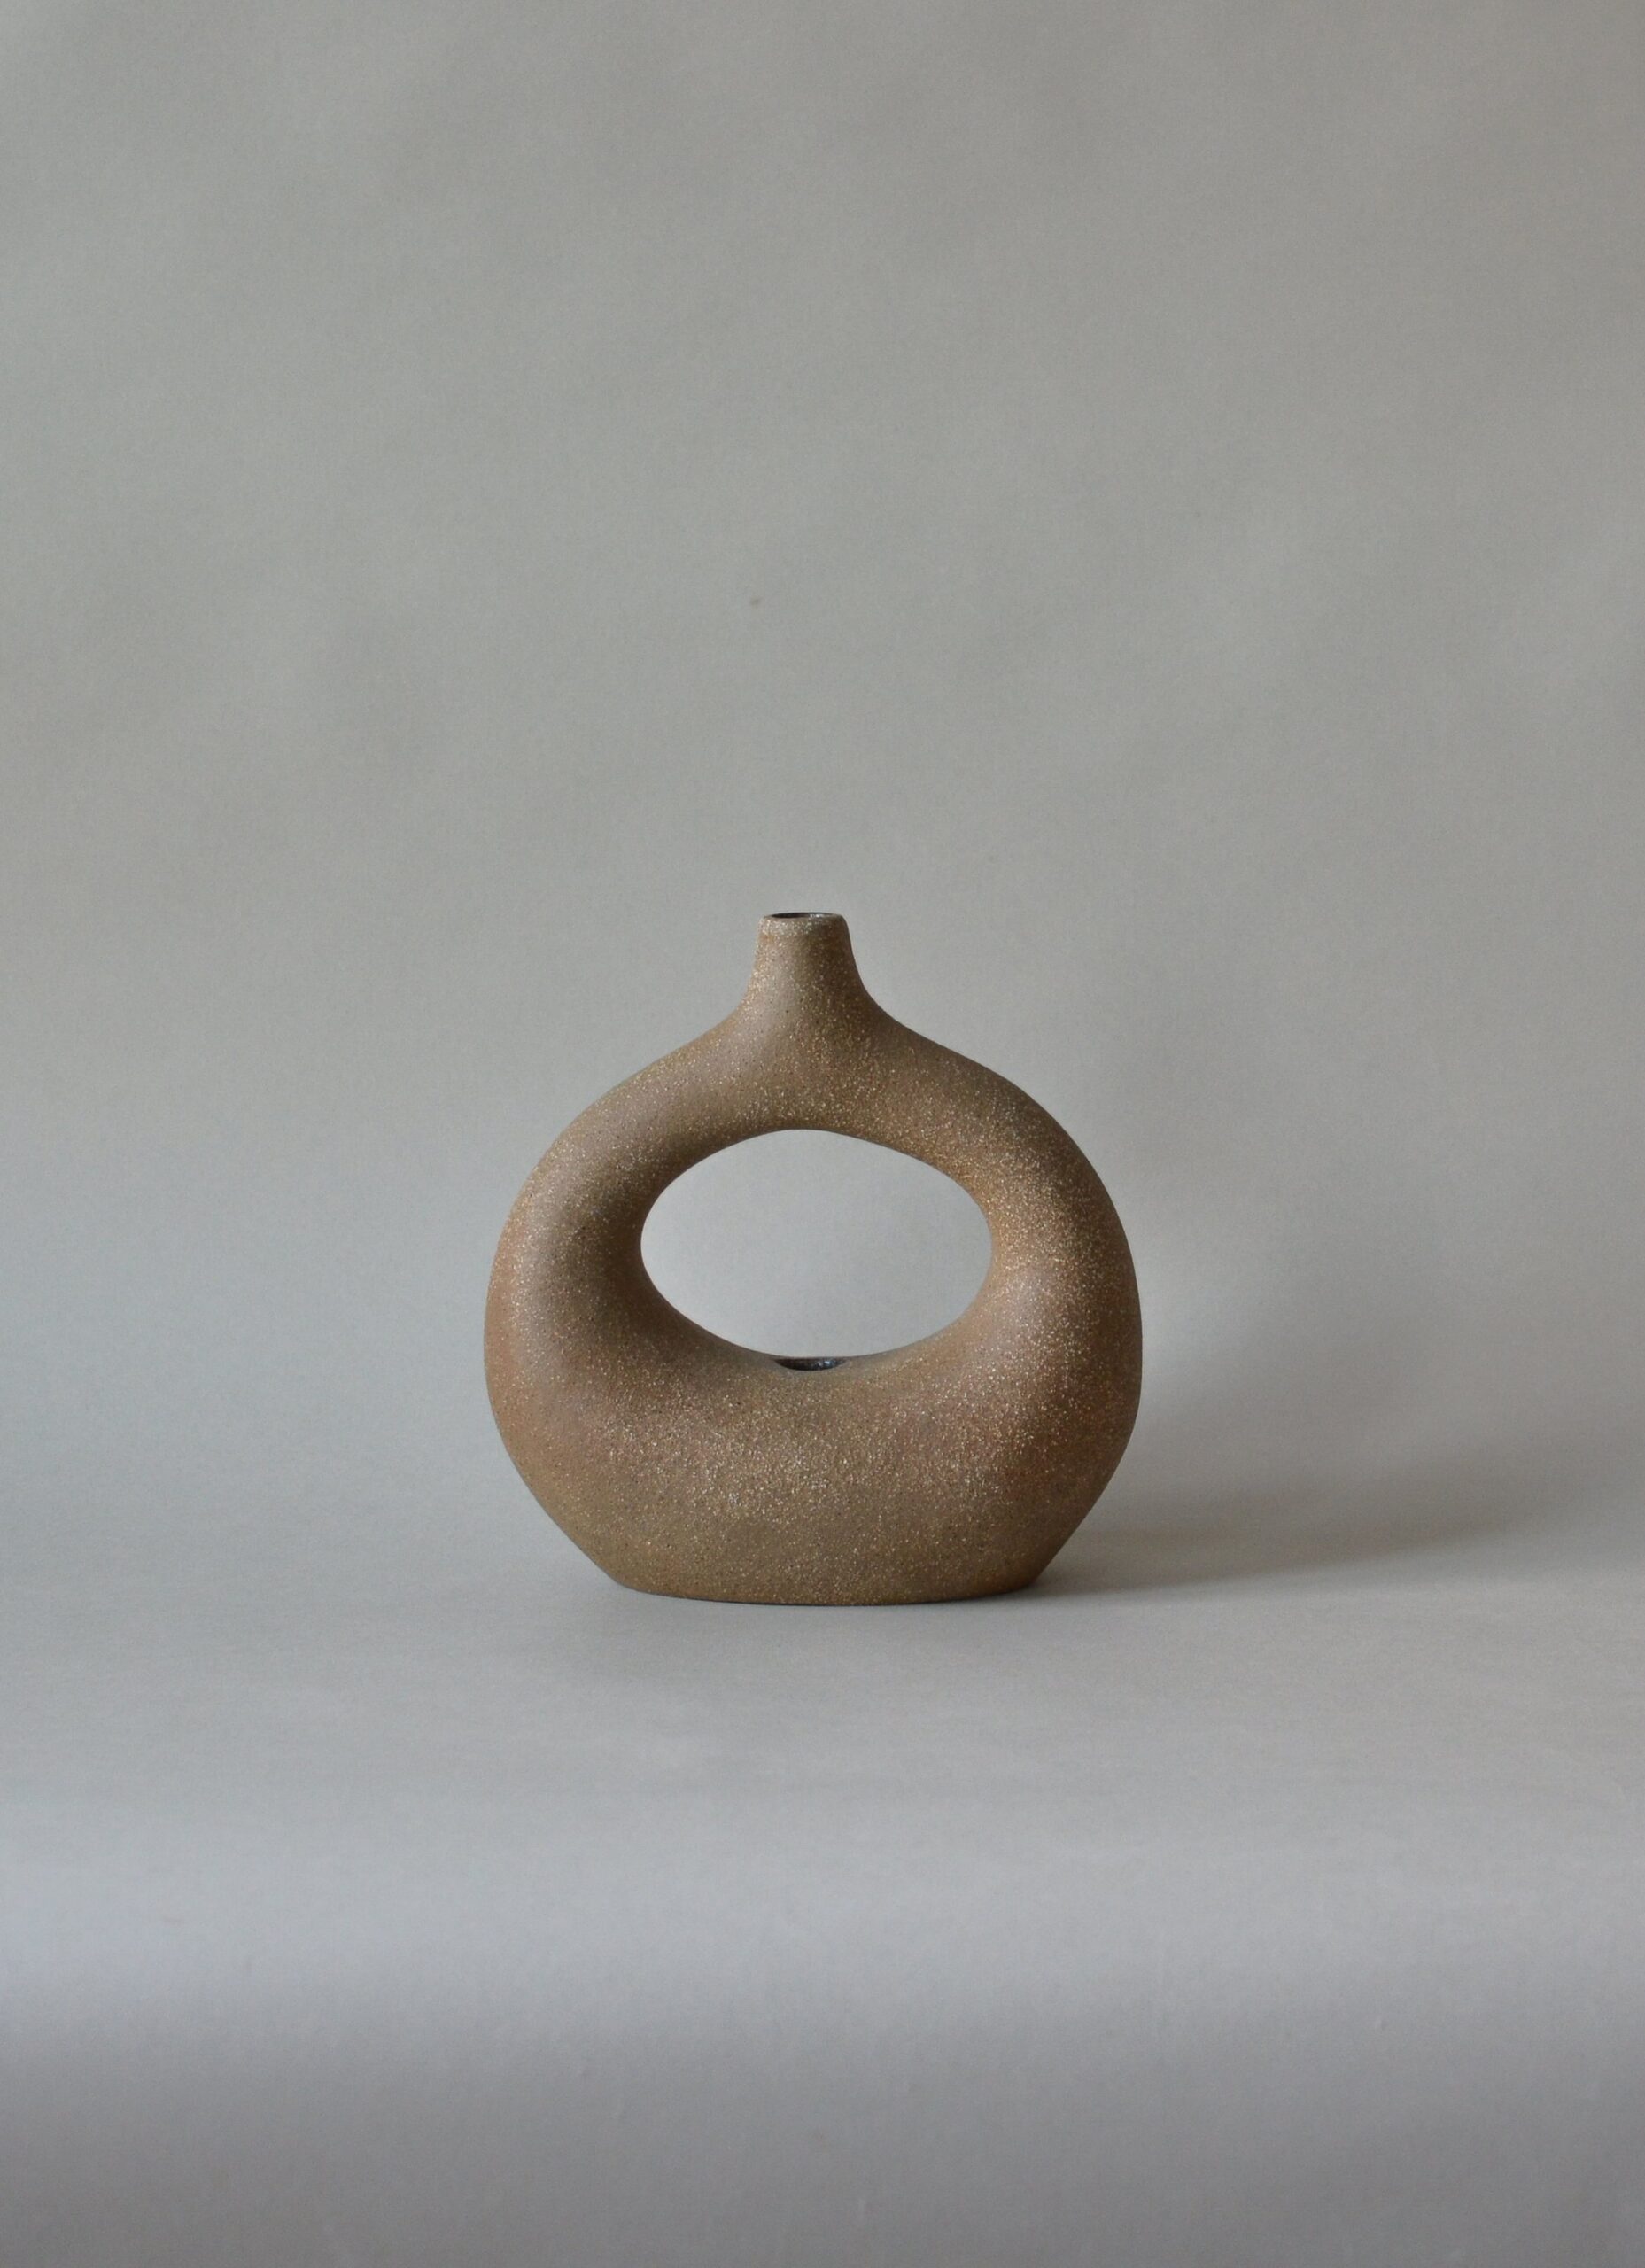 Viv Lee - Handmade stoneware single loop vessel - Limited Edition Holo 5 - Medium Buff